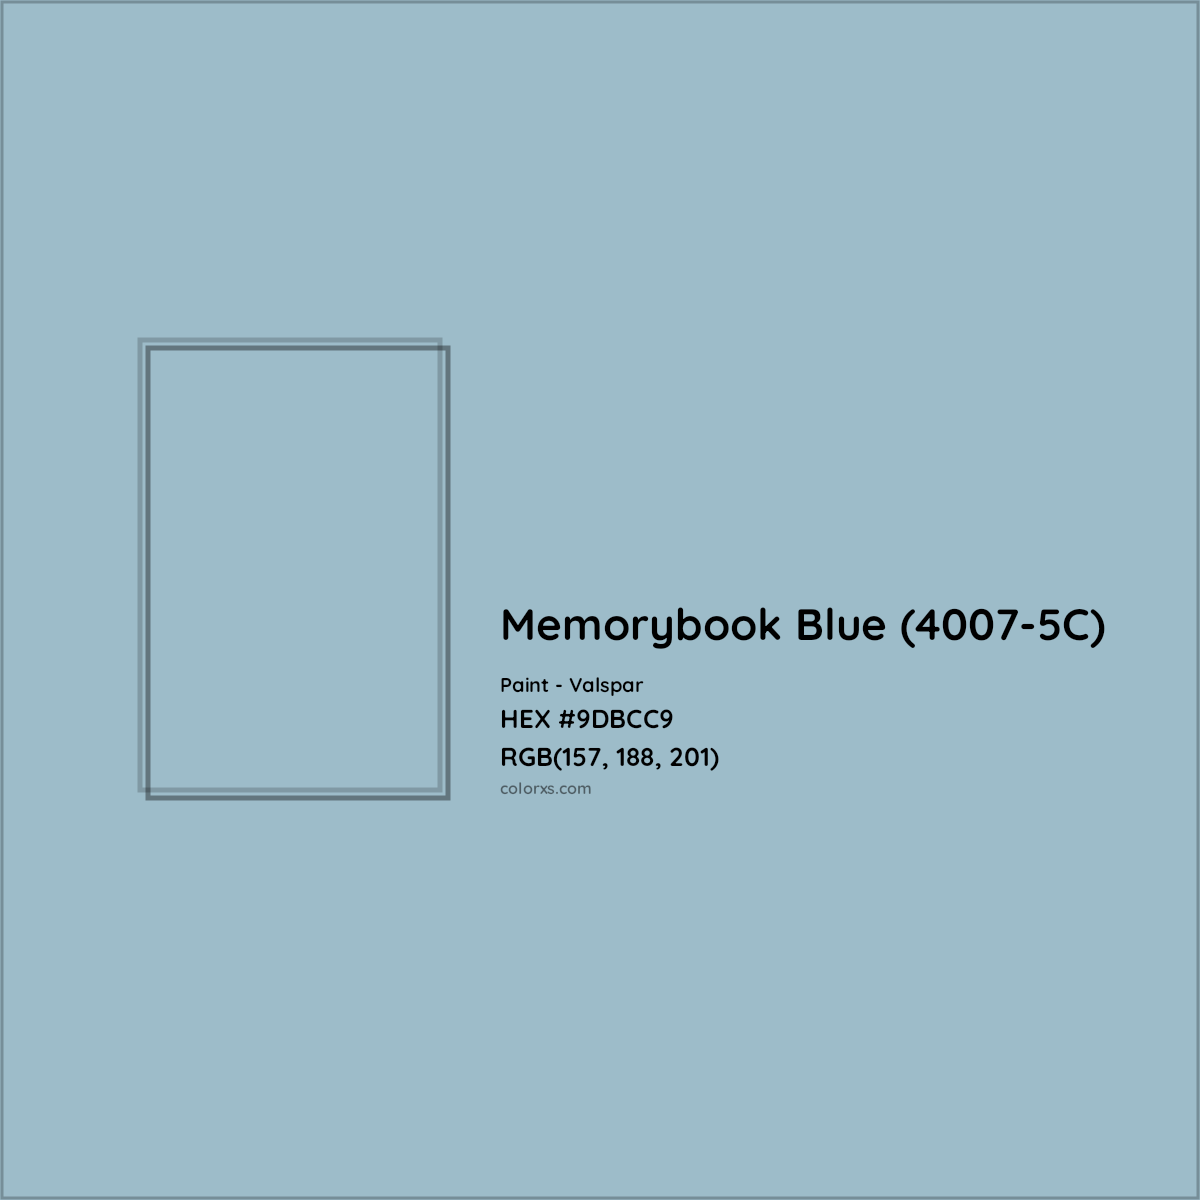 HEX #9DBCC9 Memorybook Blue (4007-5C) Paint Valspar - Color Code